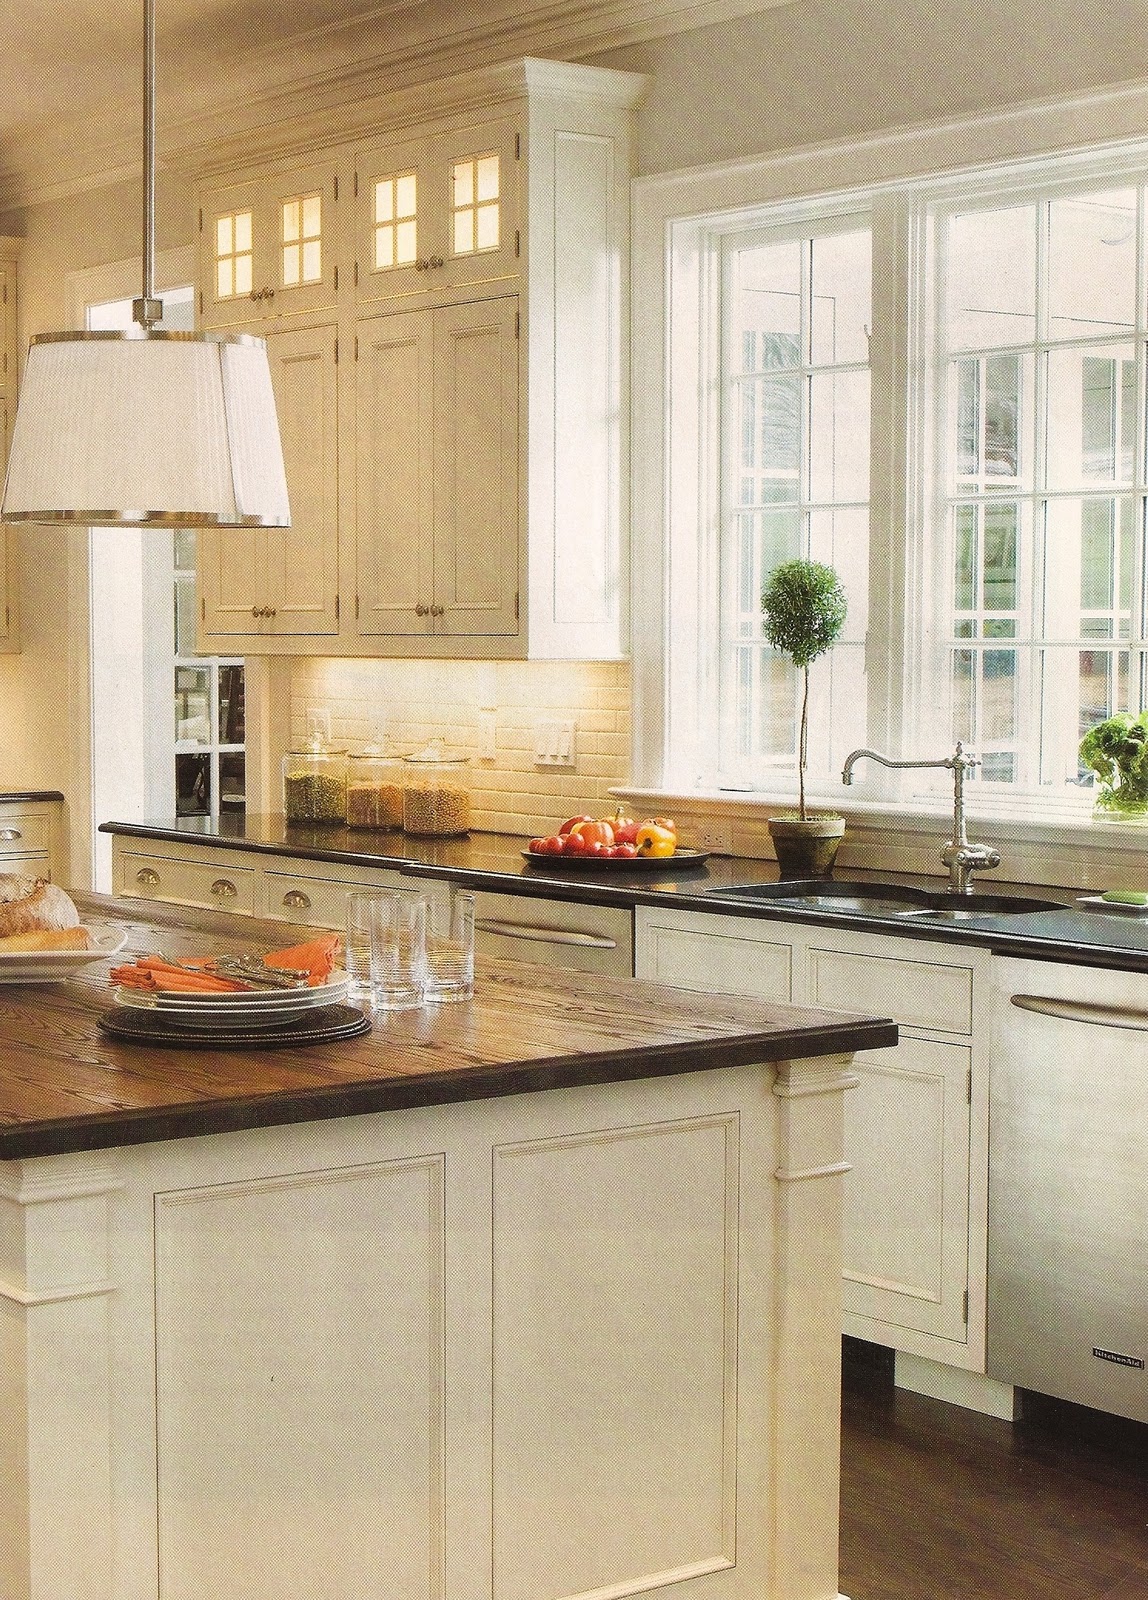 design dump: white kitchen + wood countertops